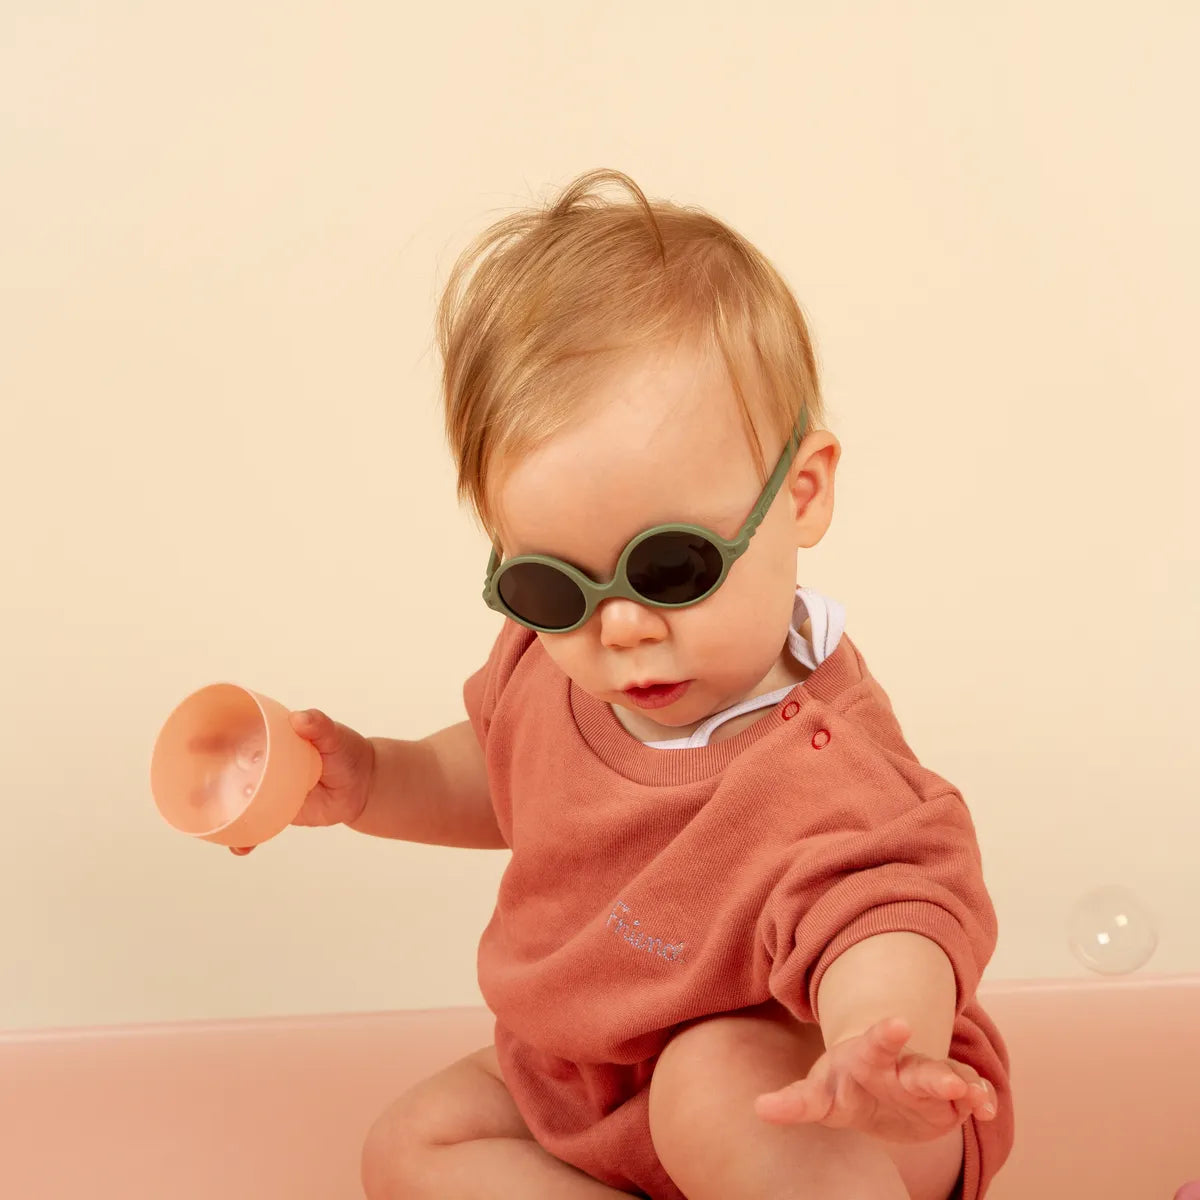 bébé jouant et portant lunette soleil kaki